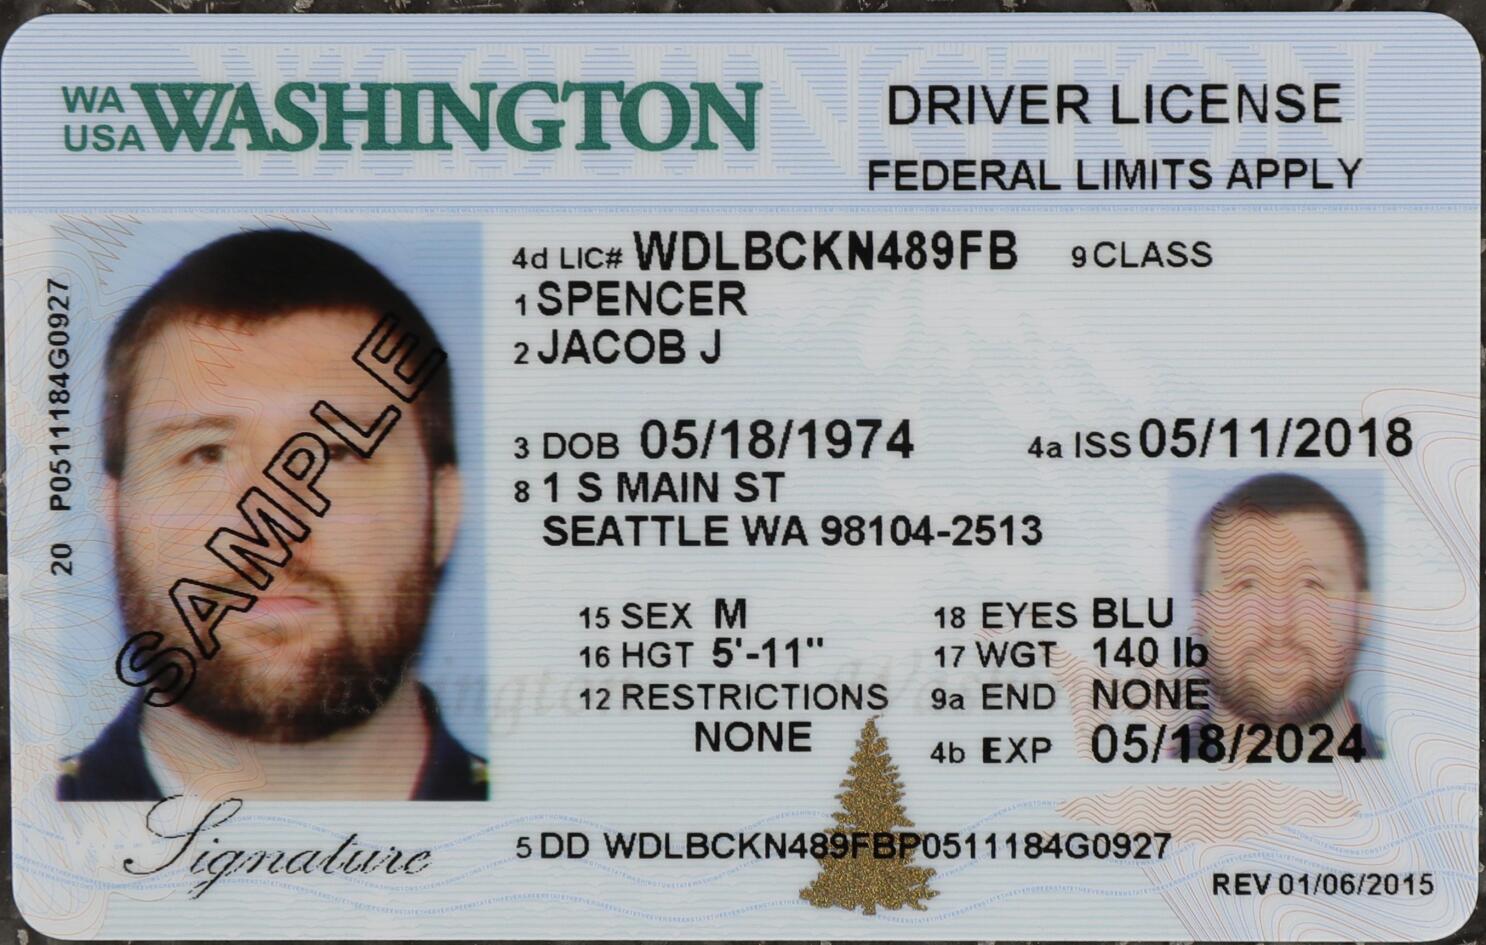 Driver's license & Passports Vendor's